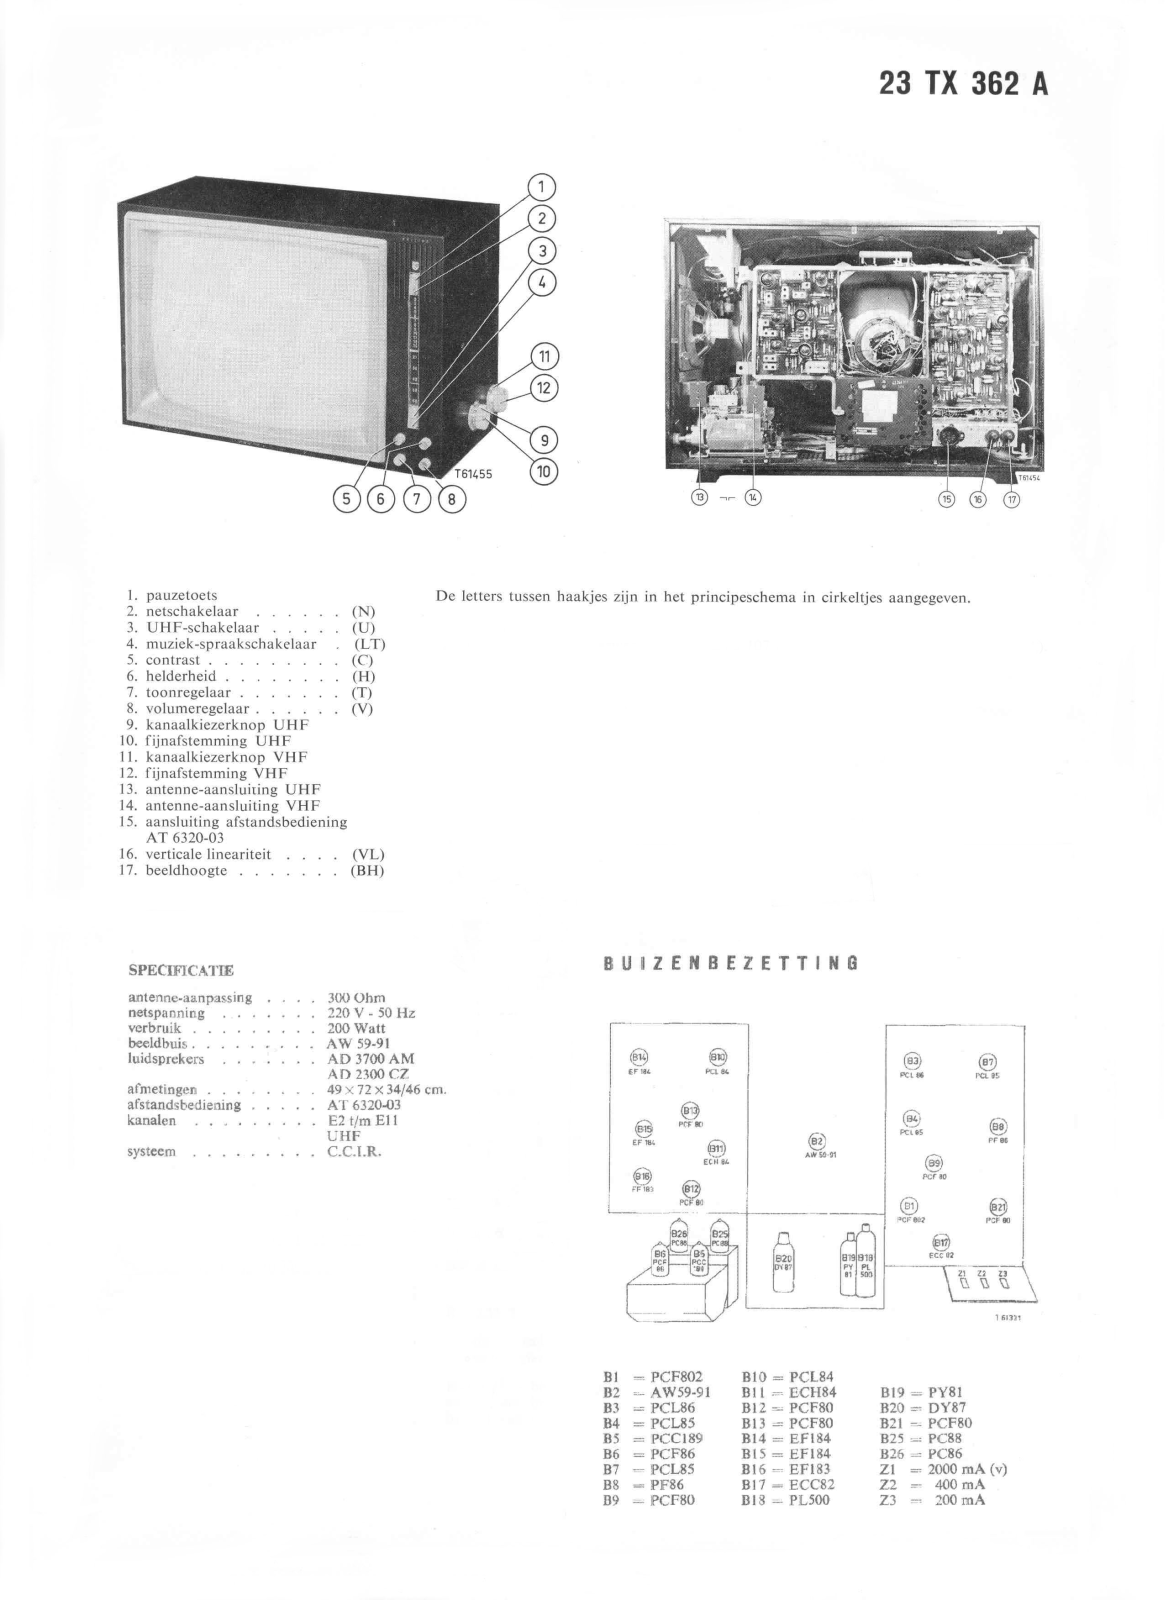 Philips 23tx362a Schematic